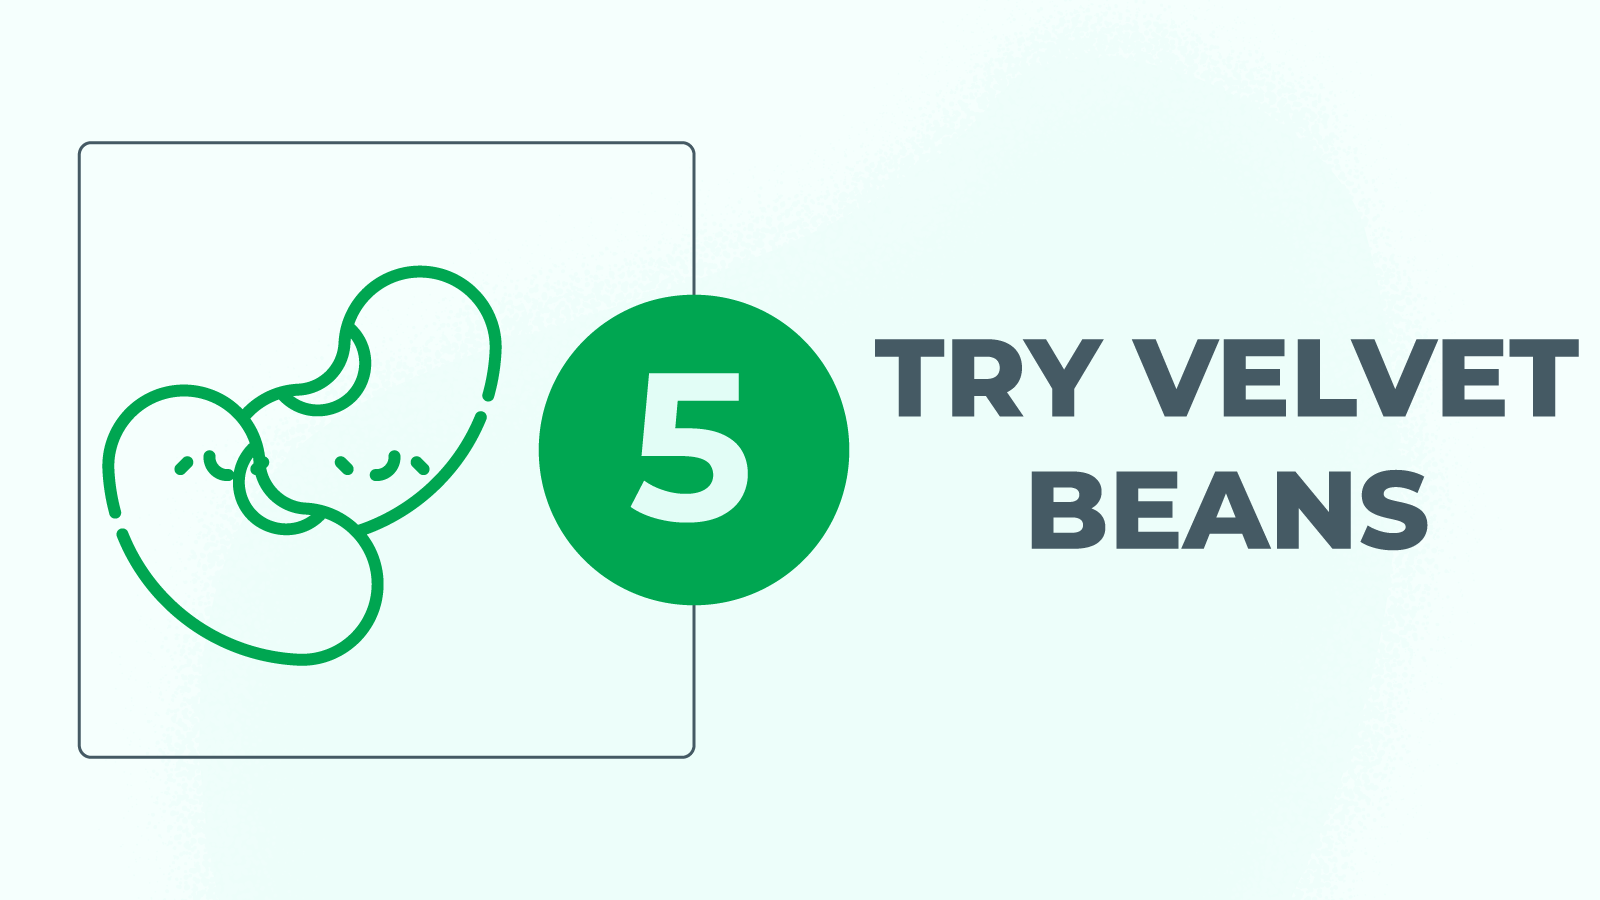 Try velvet beans